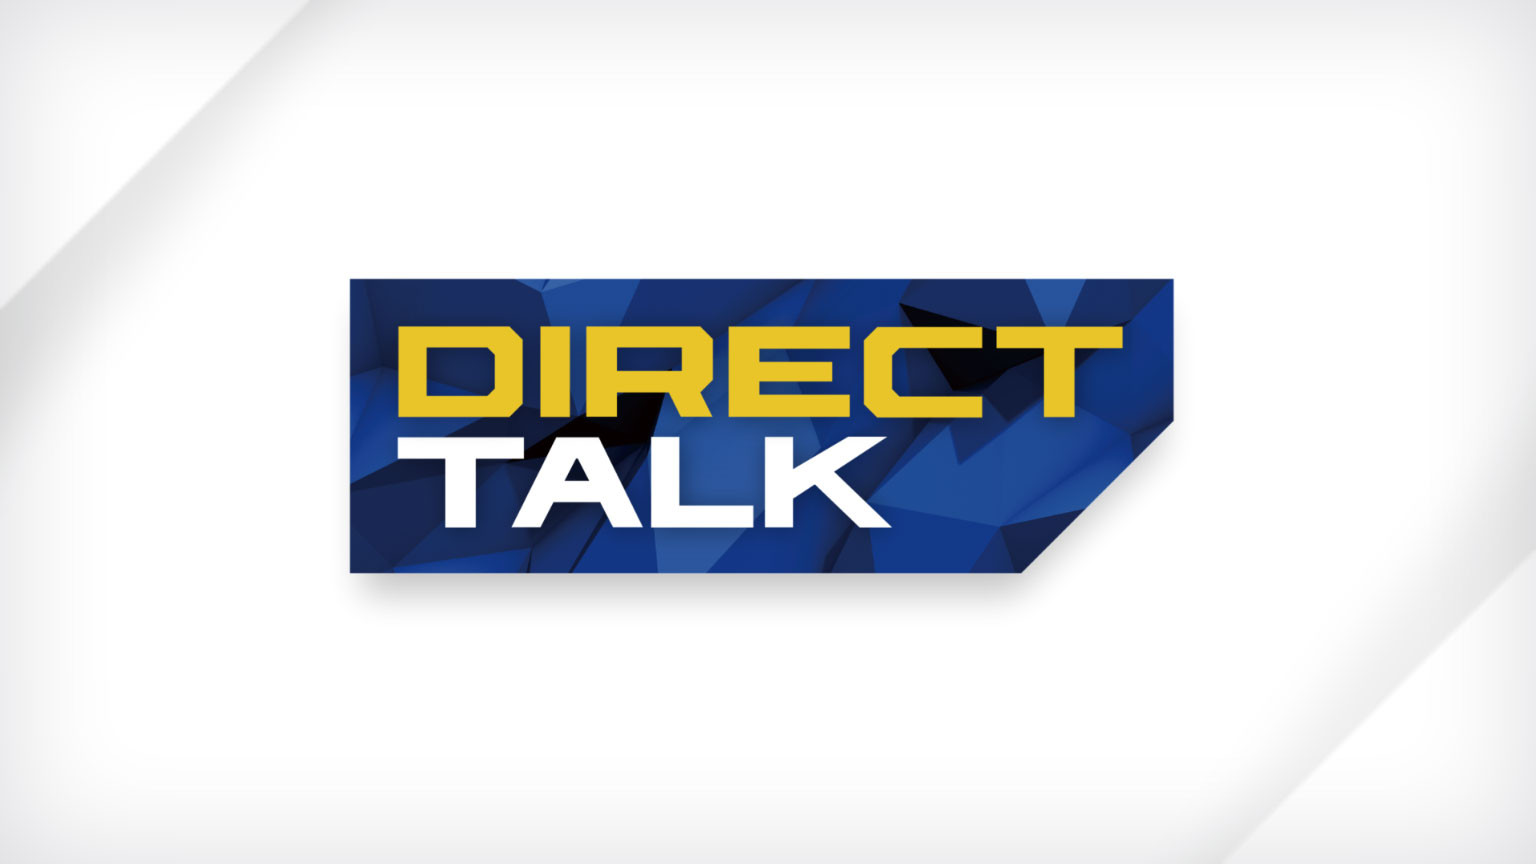 ไดเร็กต์ ทอล์ก
Direct Talk